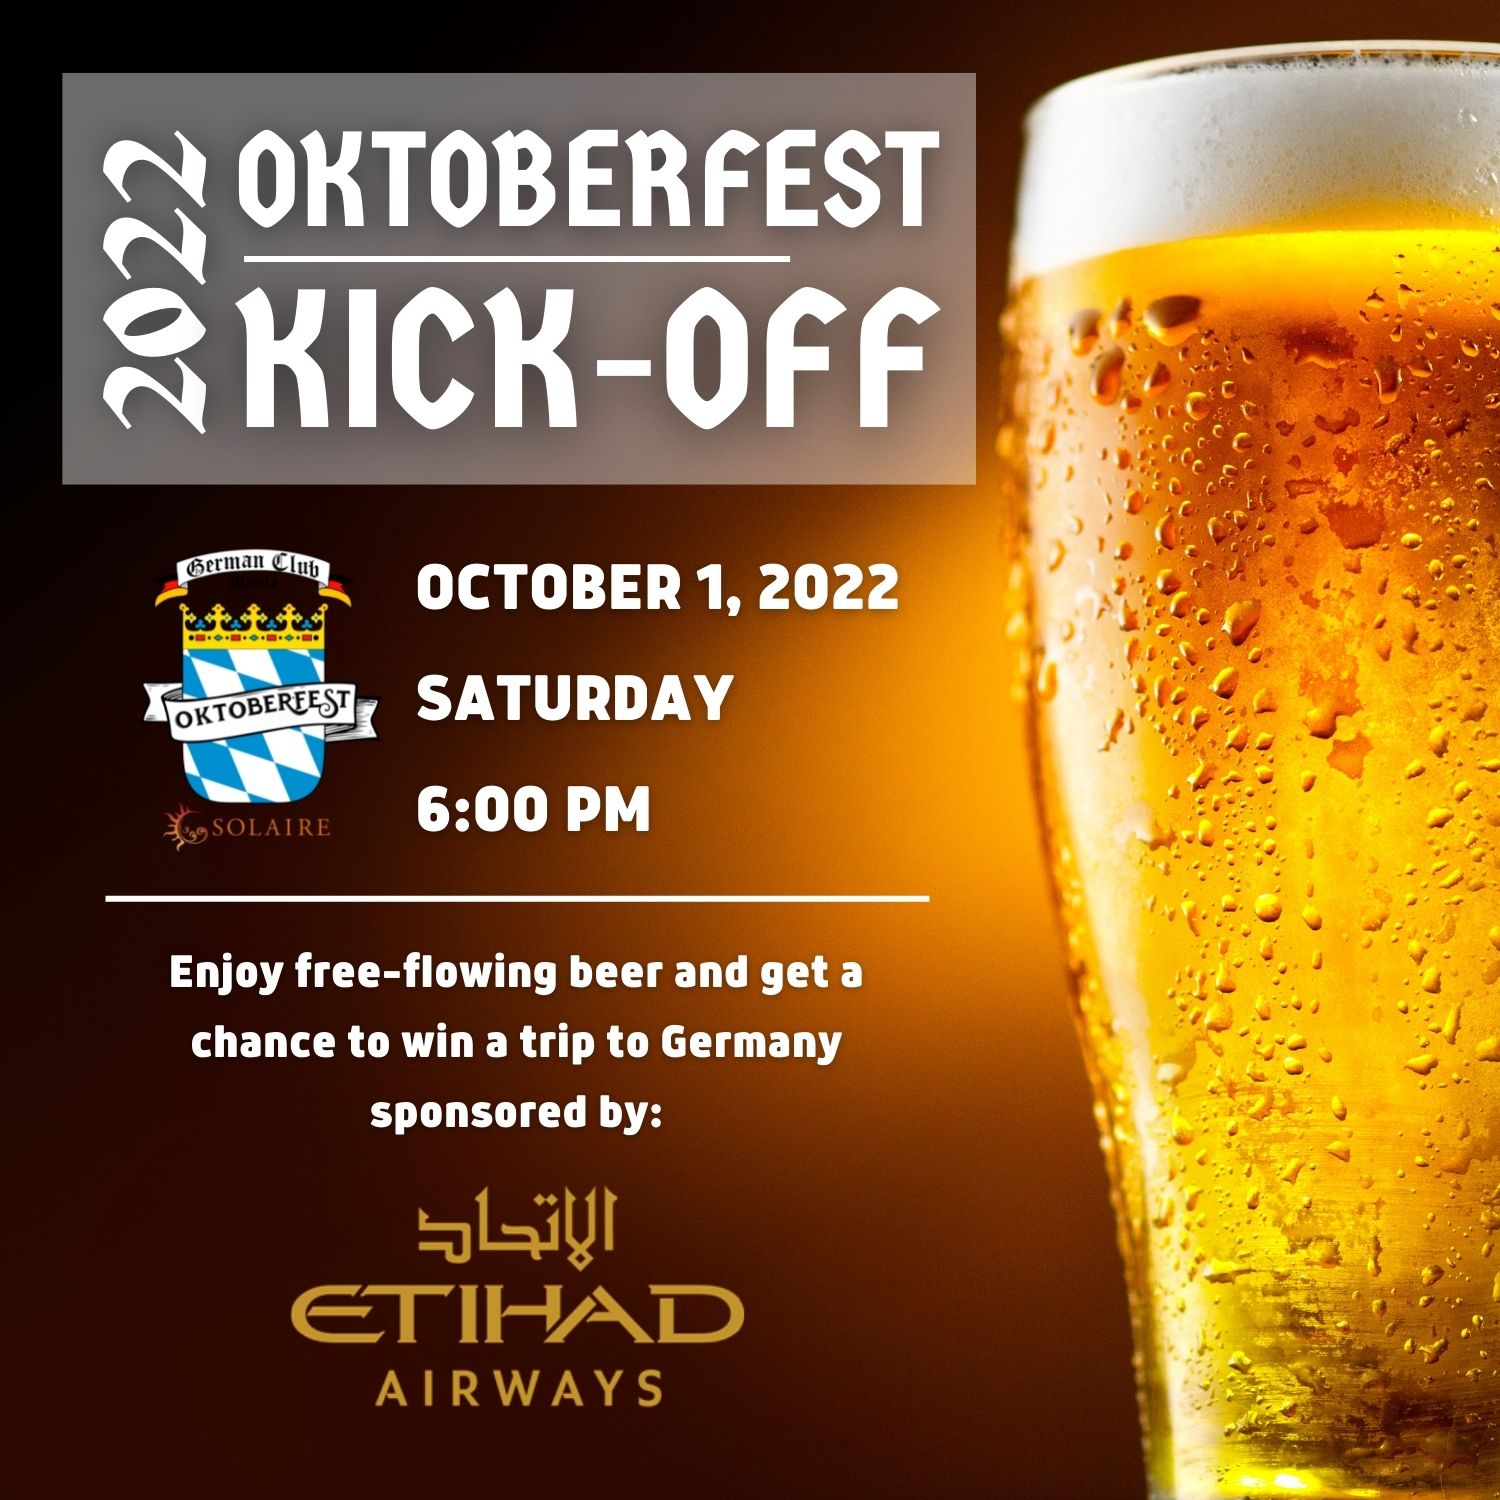 Oktoberfest Kick-Off 1 October 2022